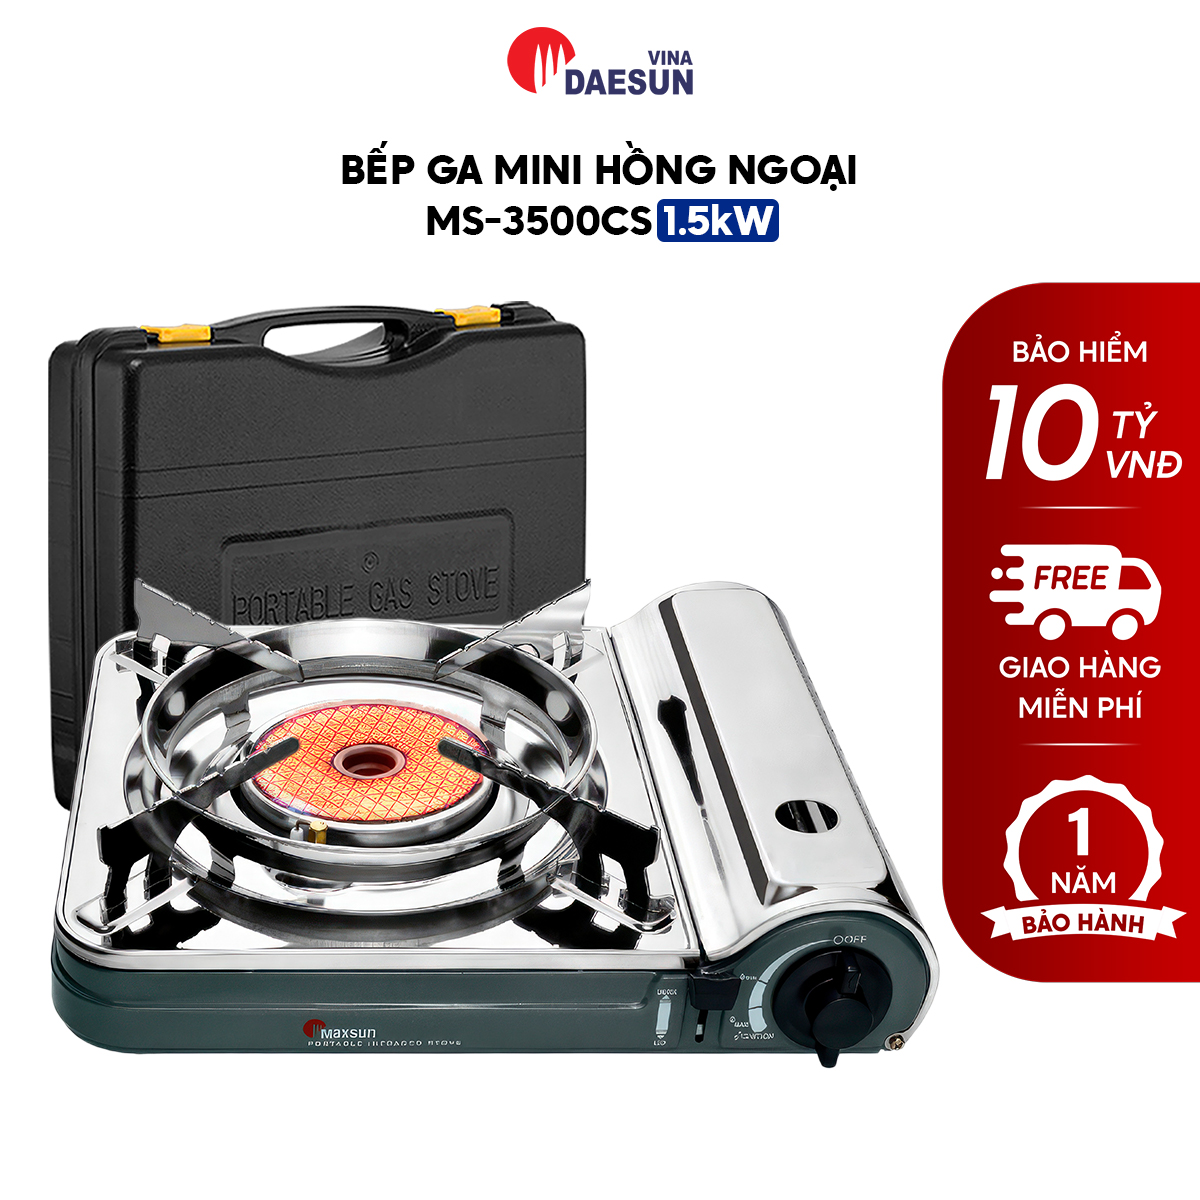 Bếp Ga Mini Hồng Ngoại Maxsun MS-3500CS - Công Suất 1500W | Đầu Đốt Sứ Hồng Ngoại | Bảo Hiểm Chống Nổ | Hàng Chính Hãng